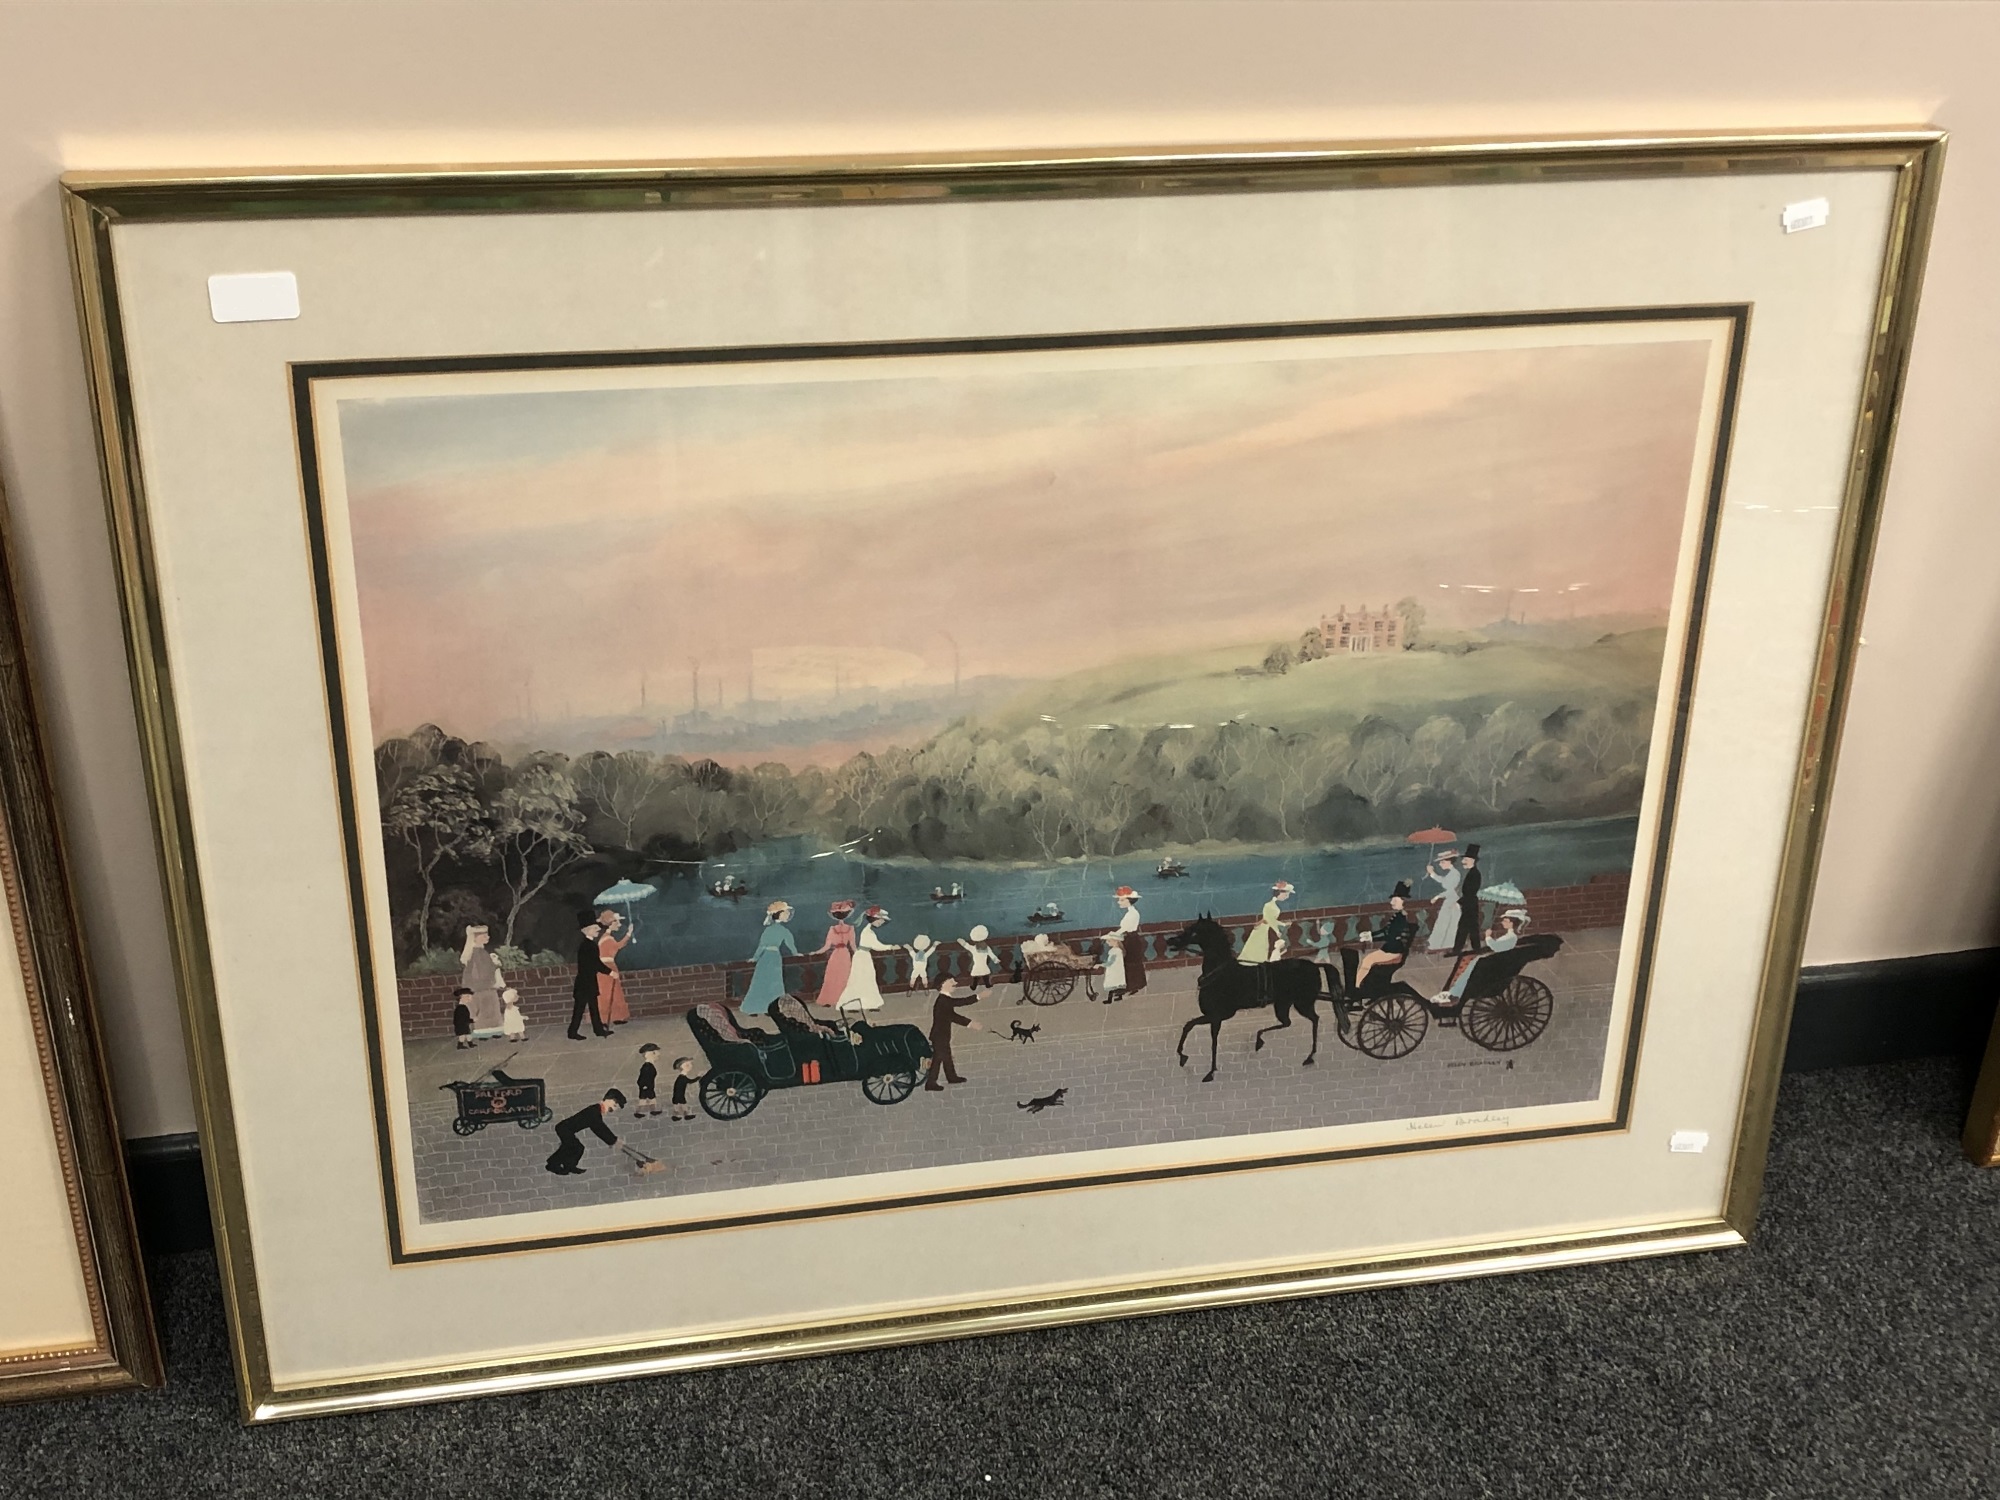 After Helen Bradley : Figures on a bridge, colour print, 71 x 49 cm,